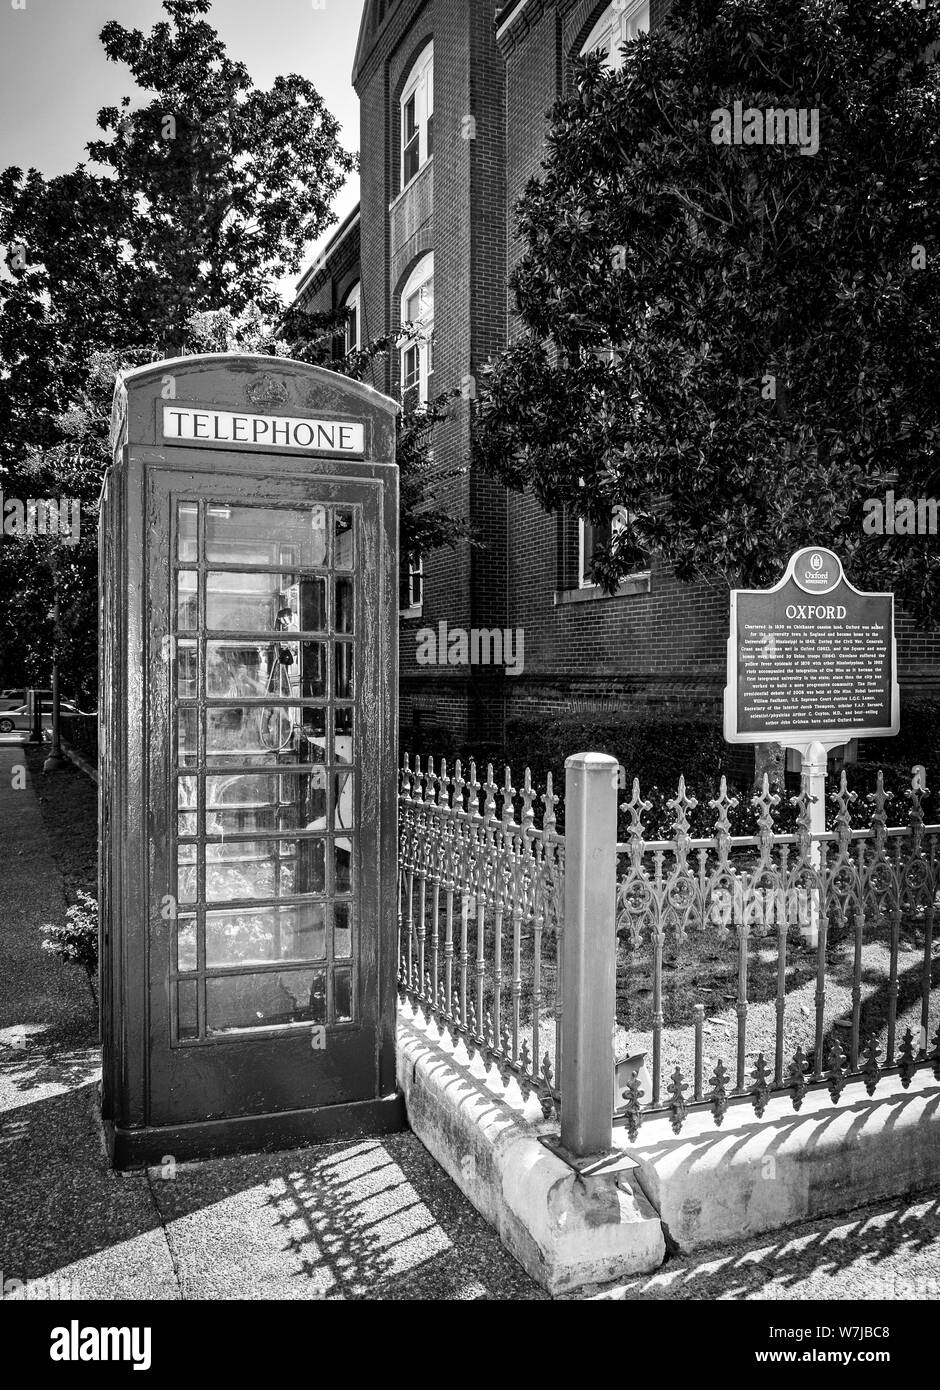 Die kultige Britische rote Telefonzelle auf dem Courthouse Square neben Oxford City Hall, mit historischen Oxford, Mississippi, MS, B&W Stockfoto